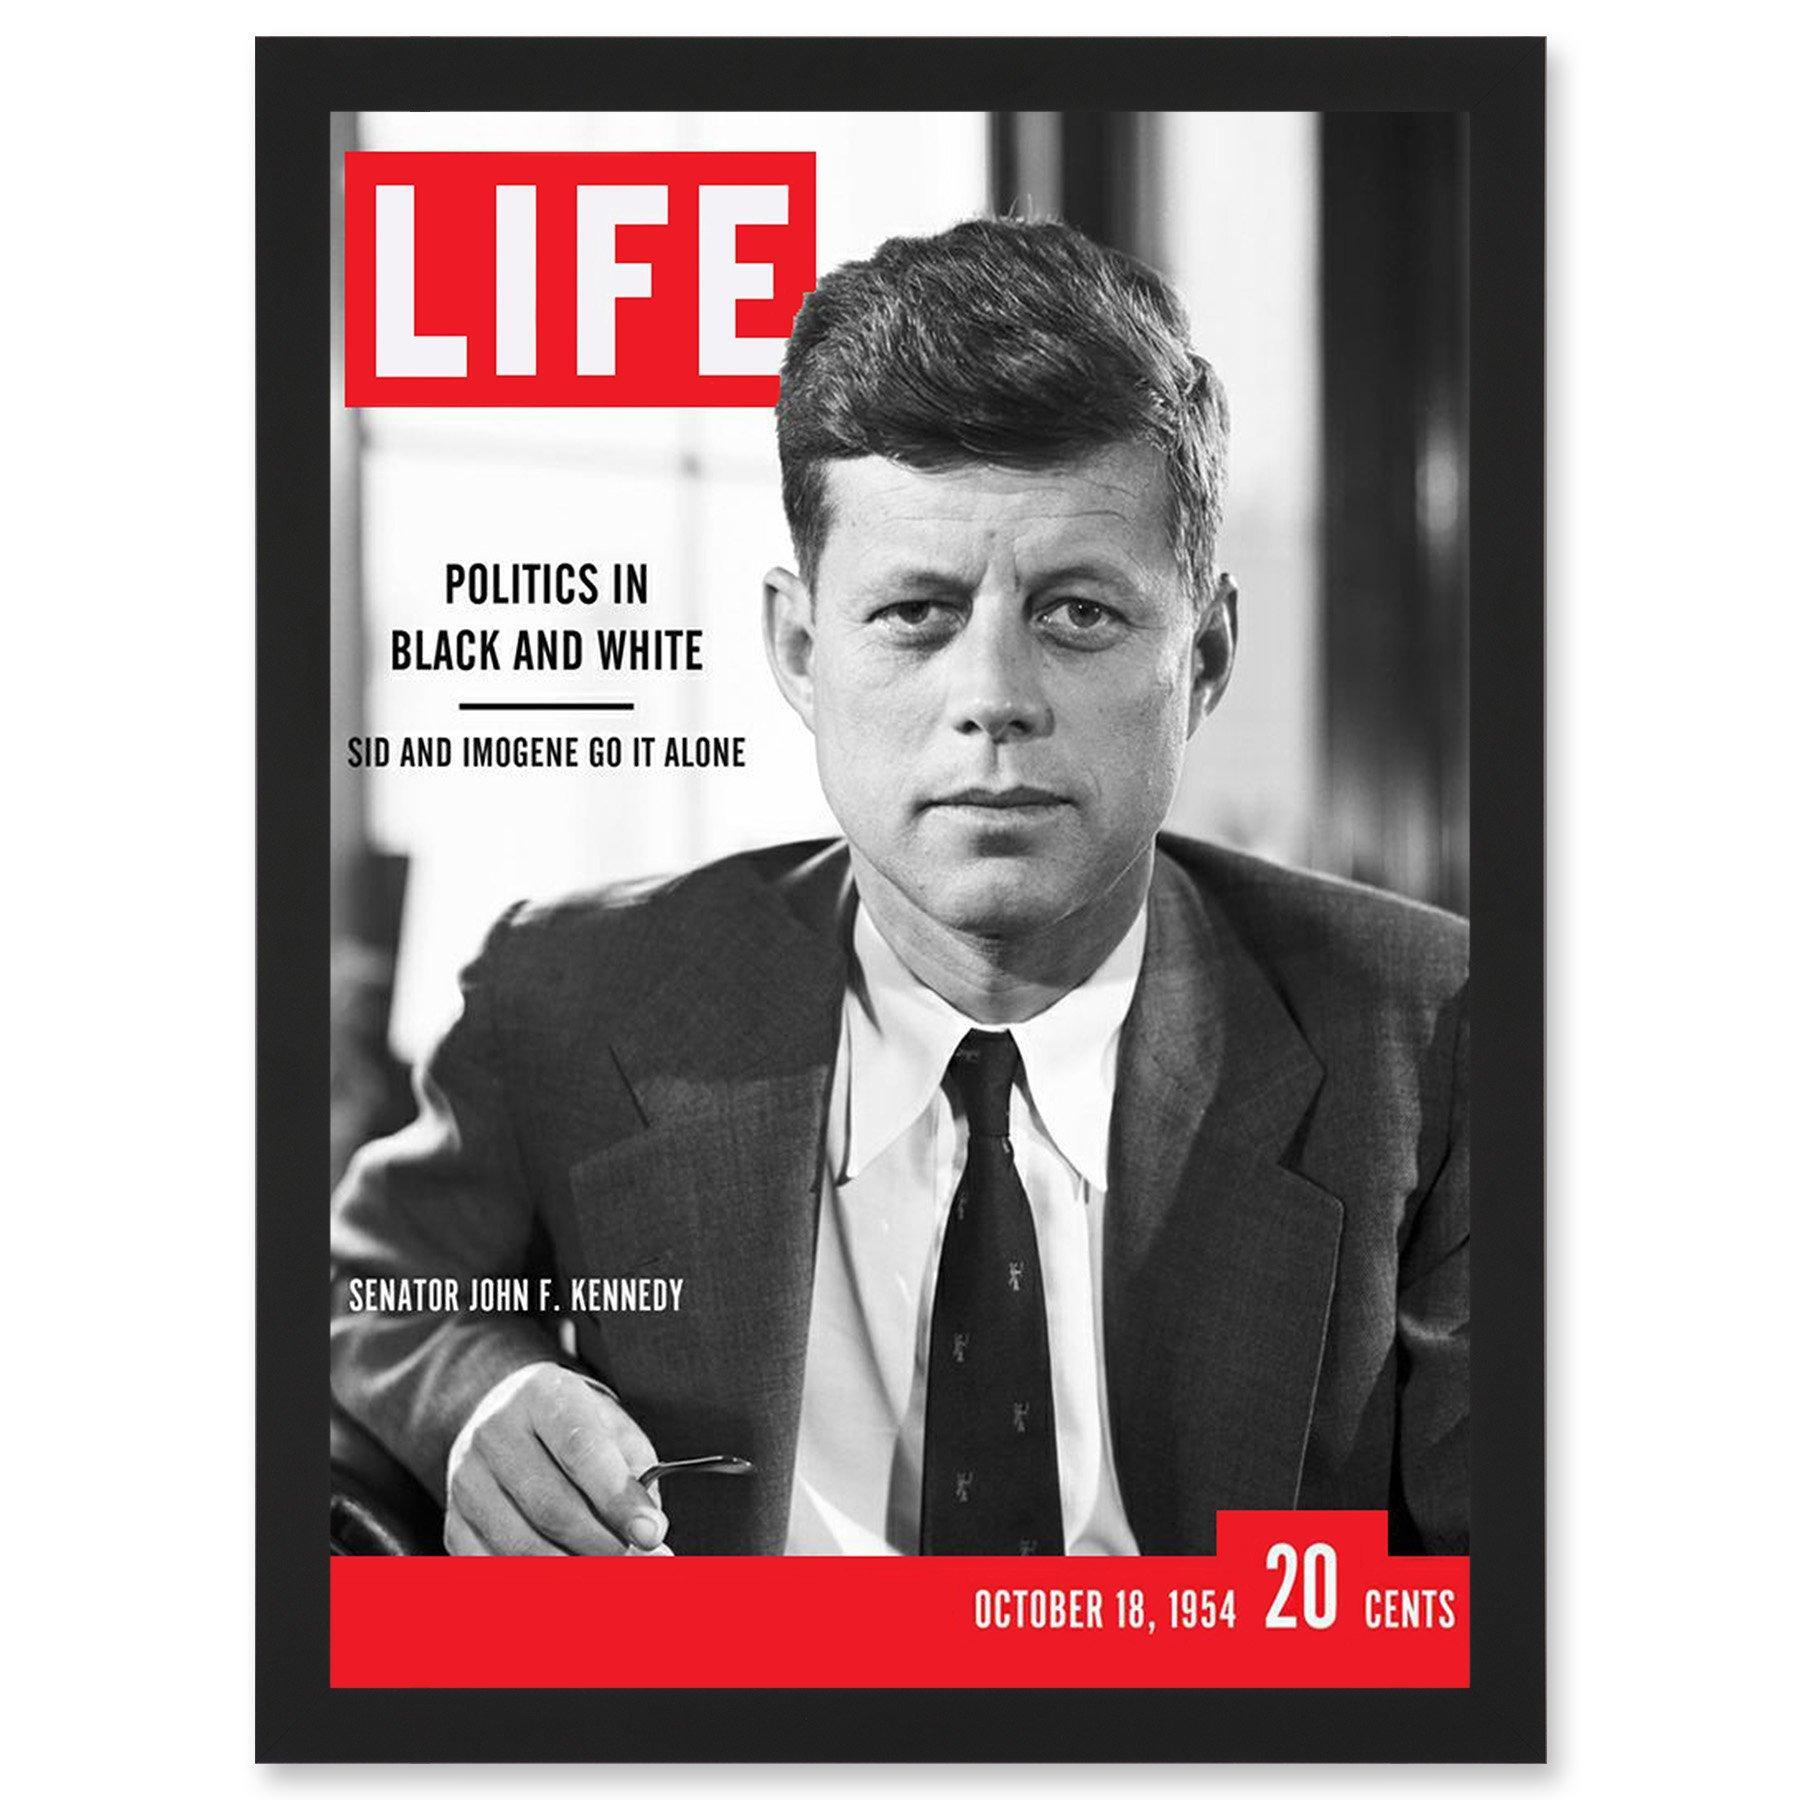 JFK John Kennedy President USA Life Magazine Cover A4 Artwork Framed Wall Art Print - image 1